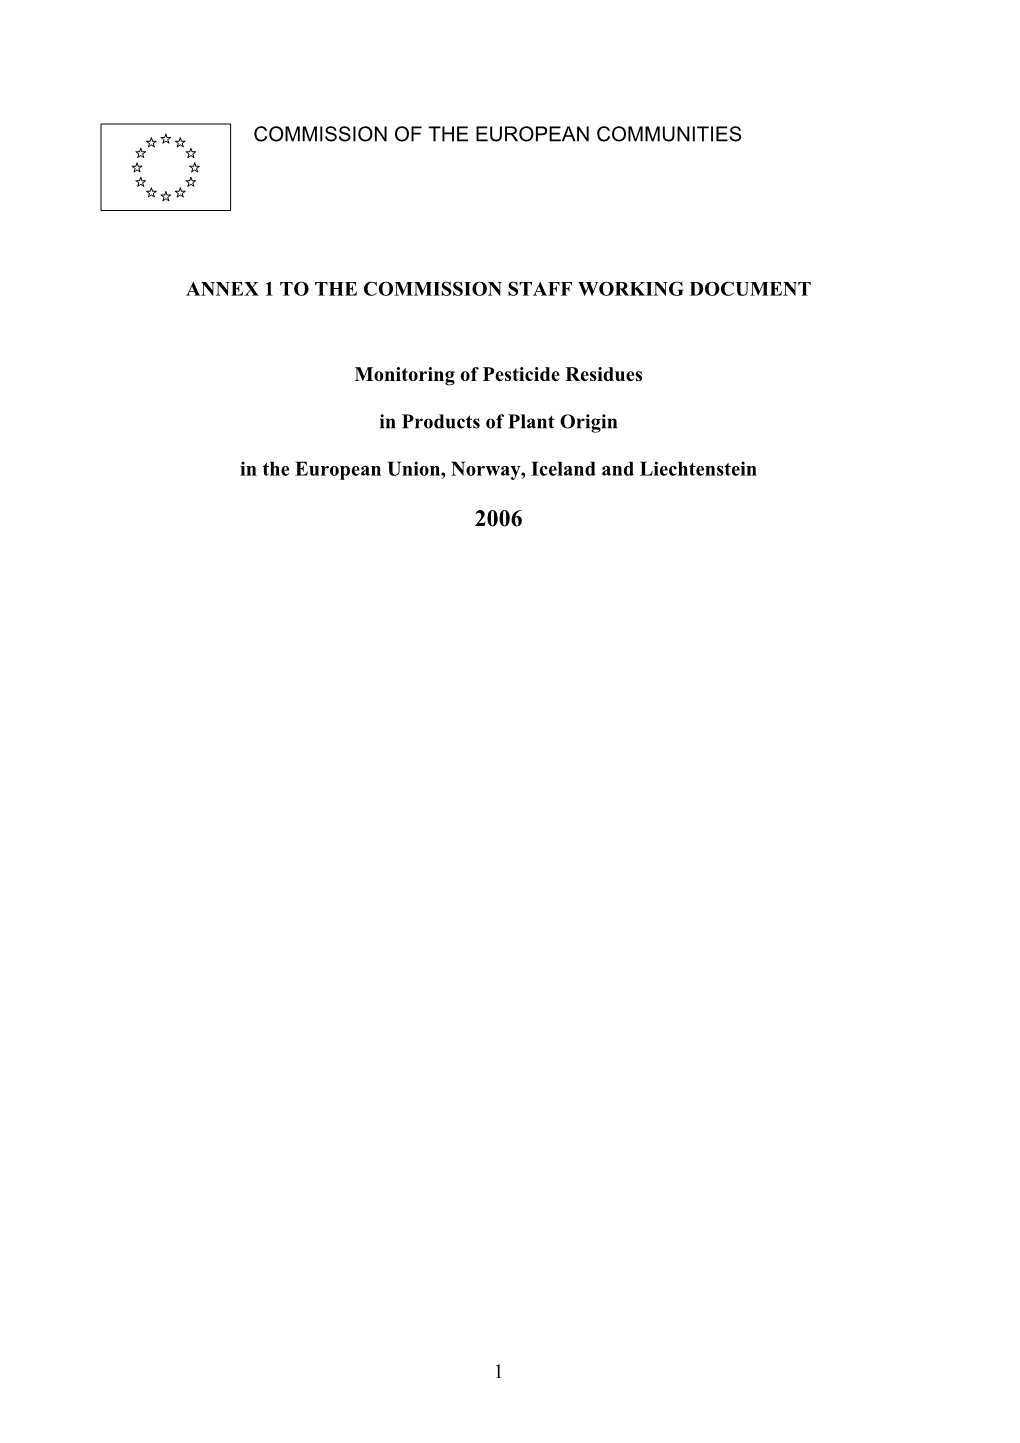 Pesticides Monitoring Report 2006 Annex 1